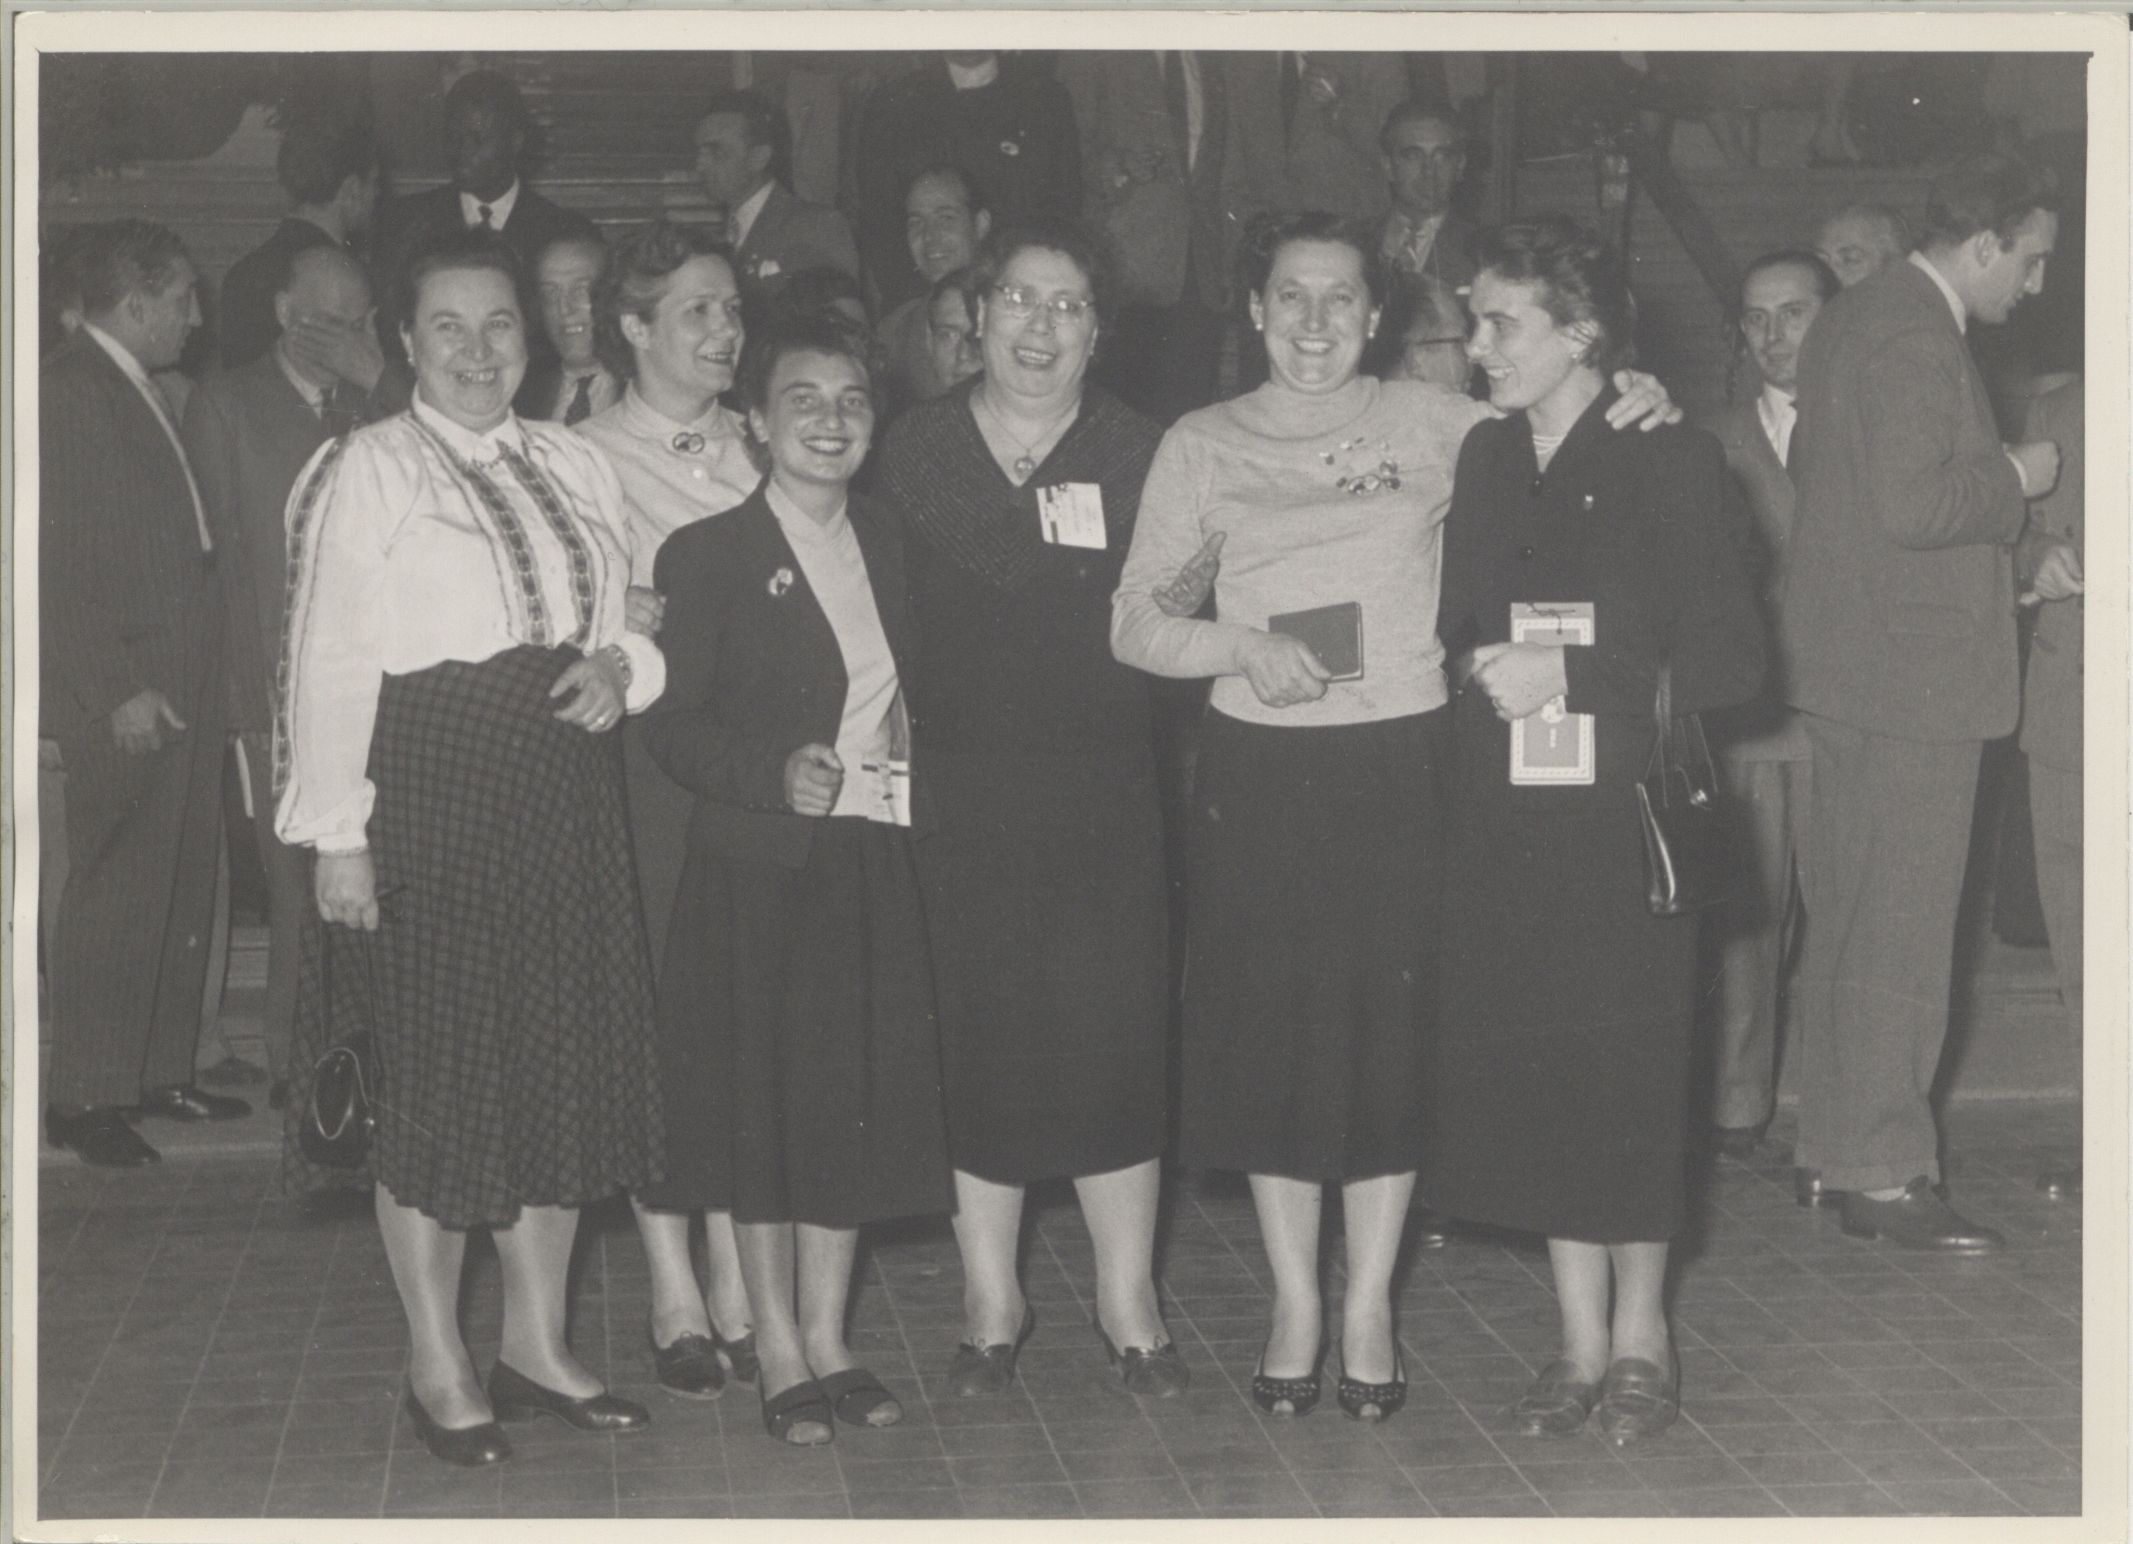   Congresso della Federazione sindacale mondiale, Vienna 10-21 ottobre 1953. Leda Colombini è la prima da sinistra.